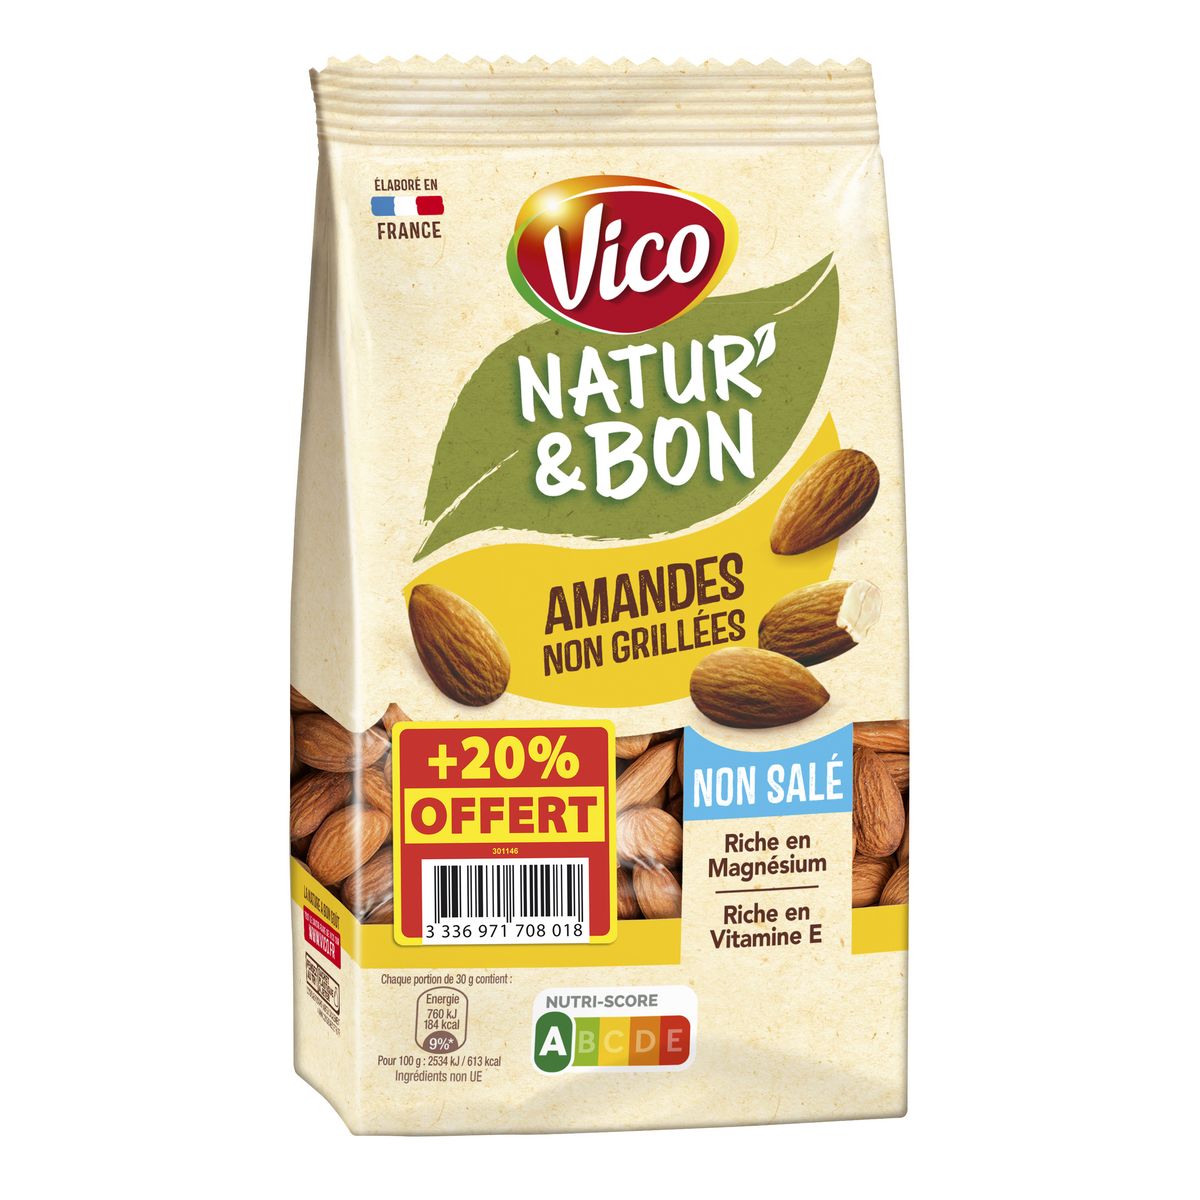 VICO Natur'&bon amandes non grillées non salé 200g+20% offert